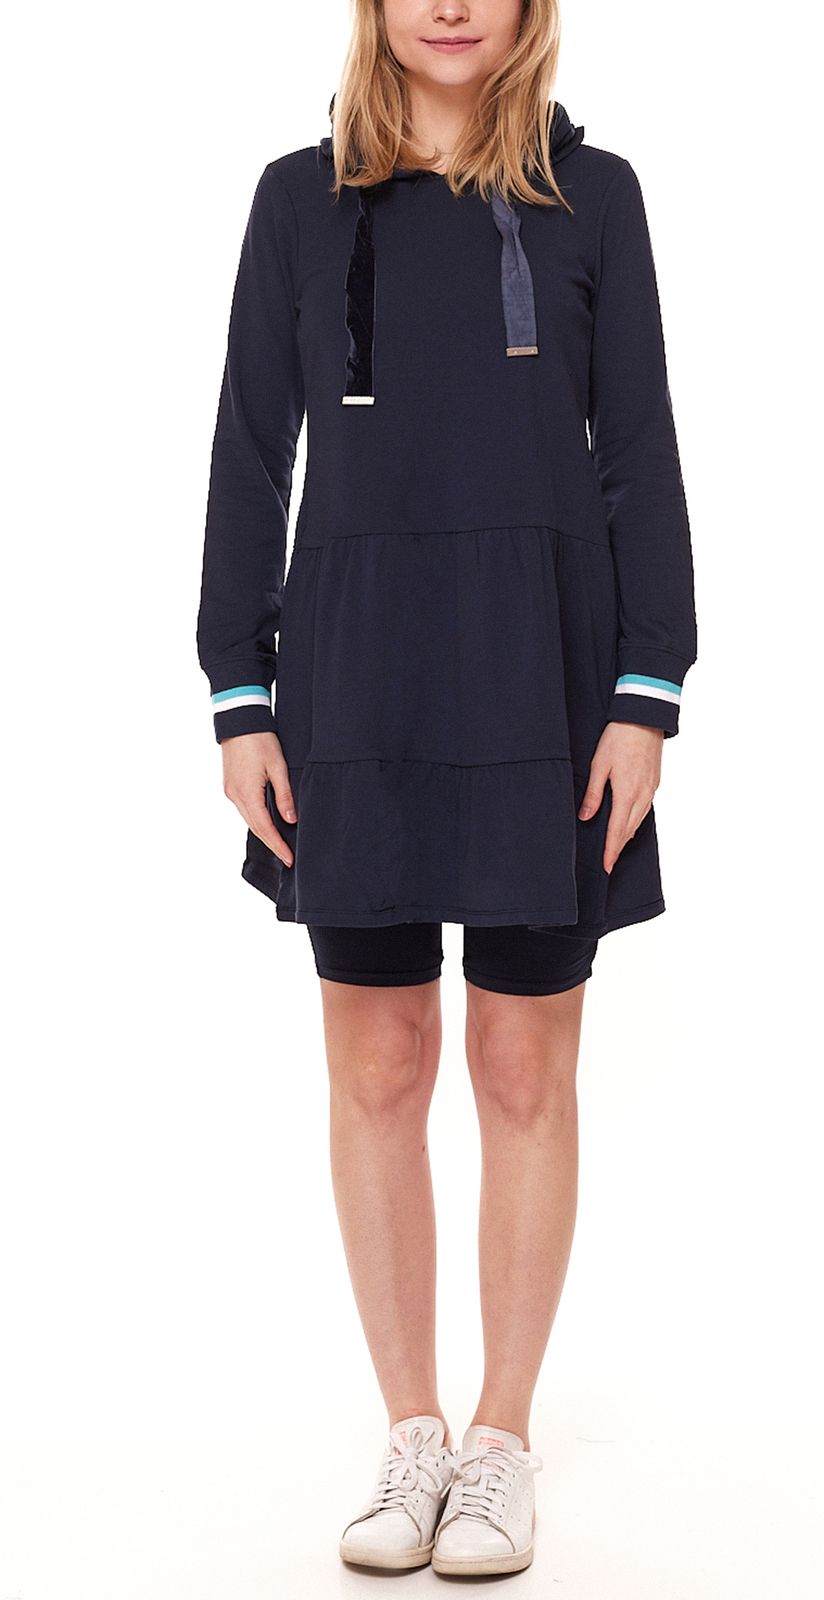 AjC Damen Sweat-Kleid mit passender Radler Baumwoll-Kleid 72496758 Dunkelblau von AjC